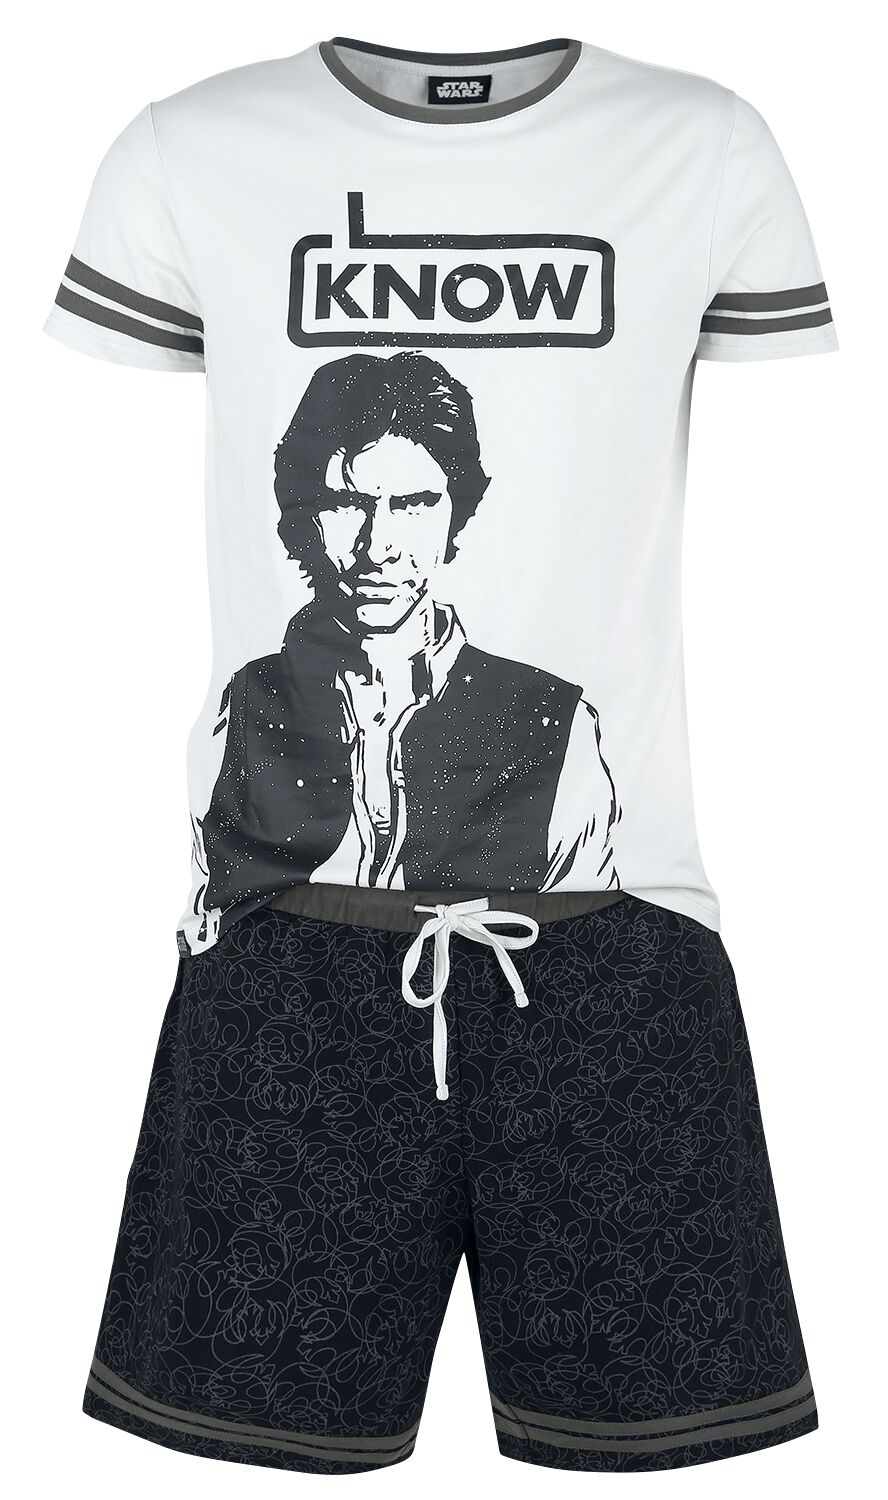 Star Wars Han Solo - I Know Schlafanzug grau schwarz in M